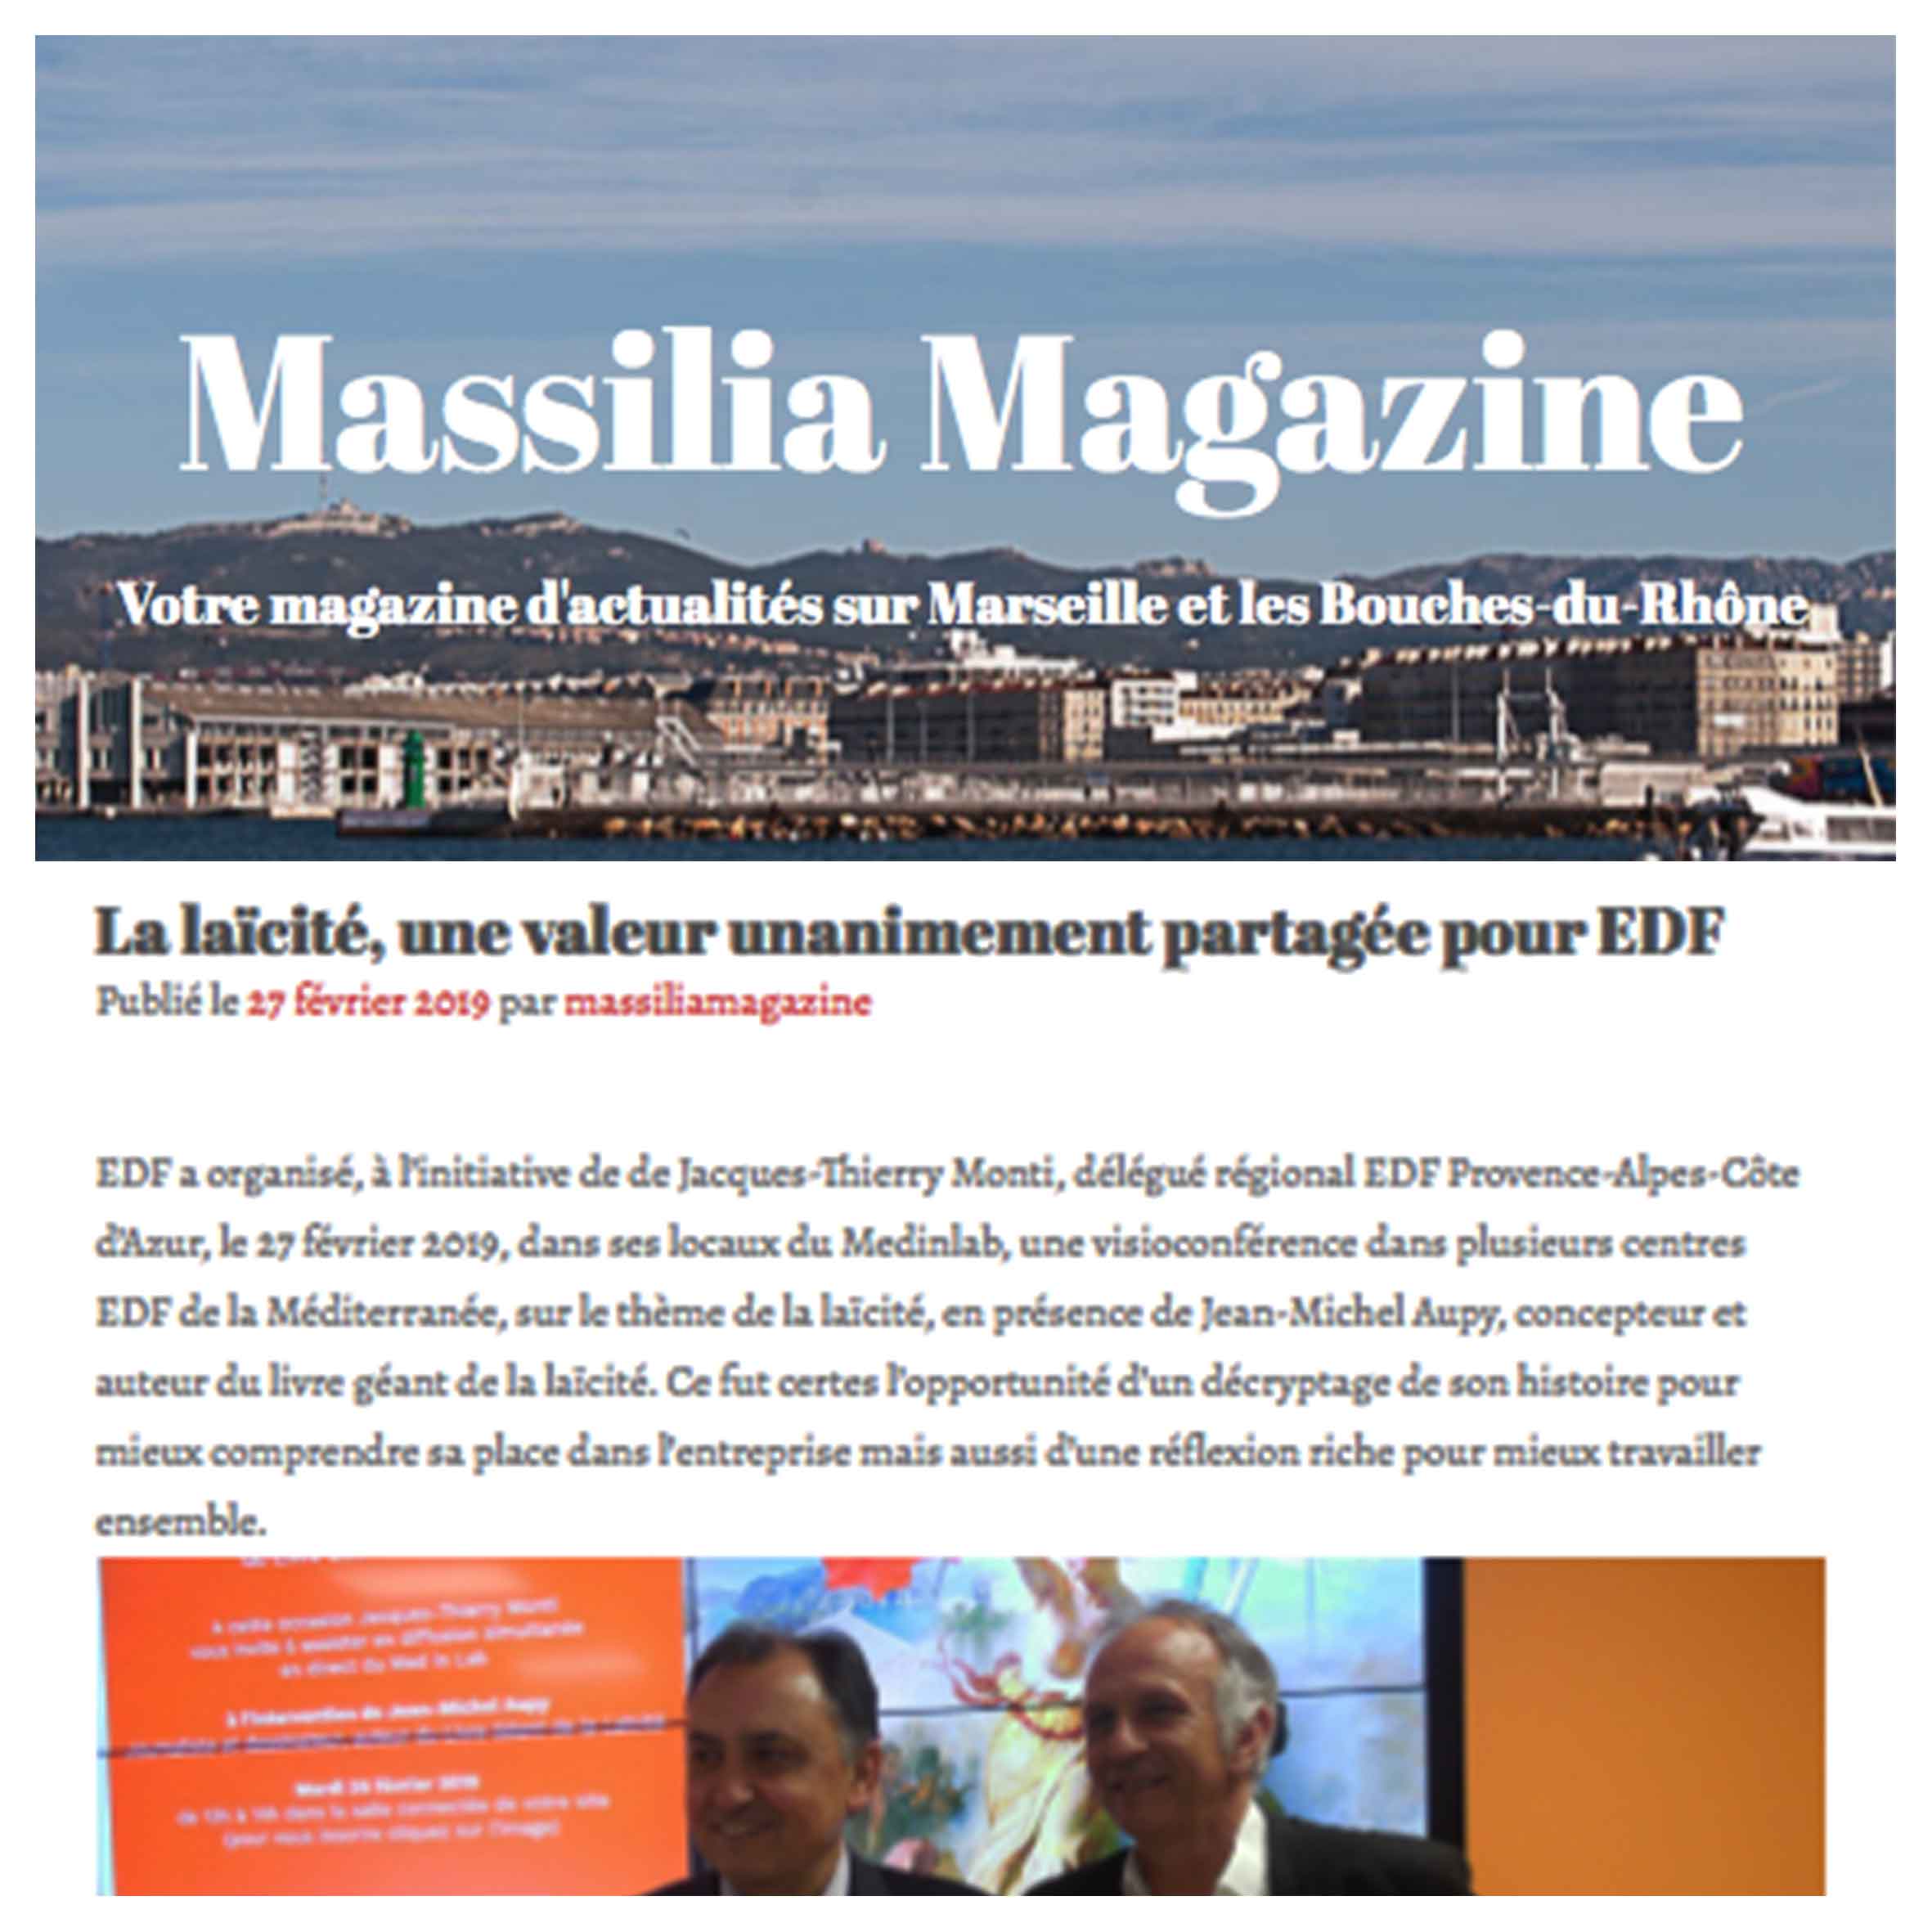 Massilia Magazine